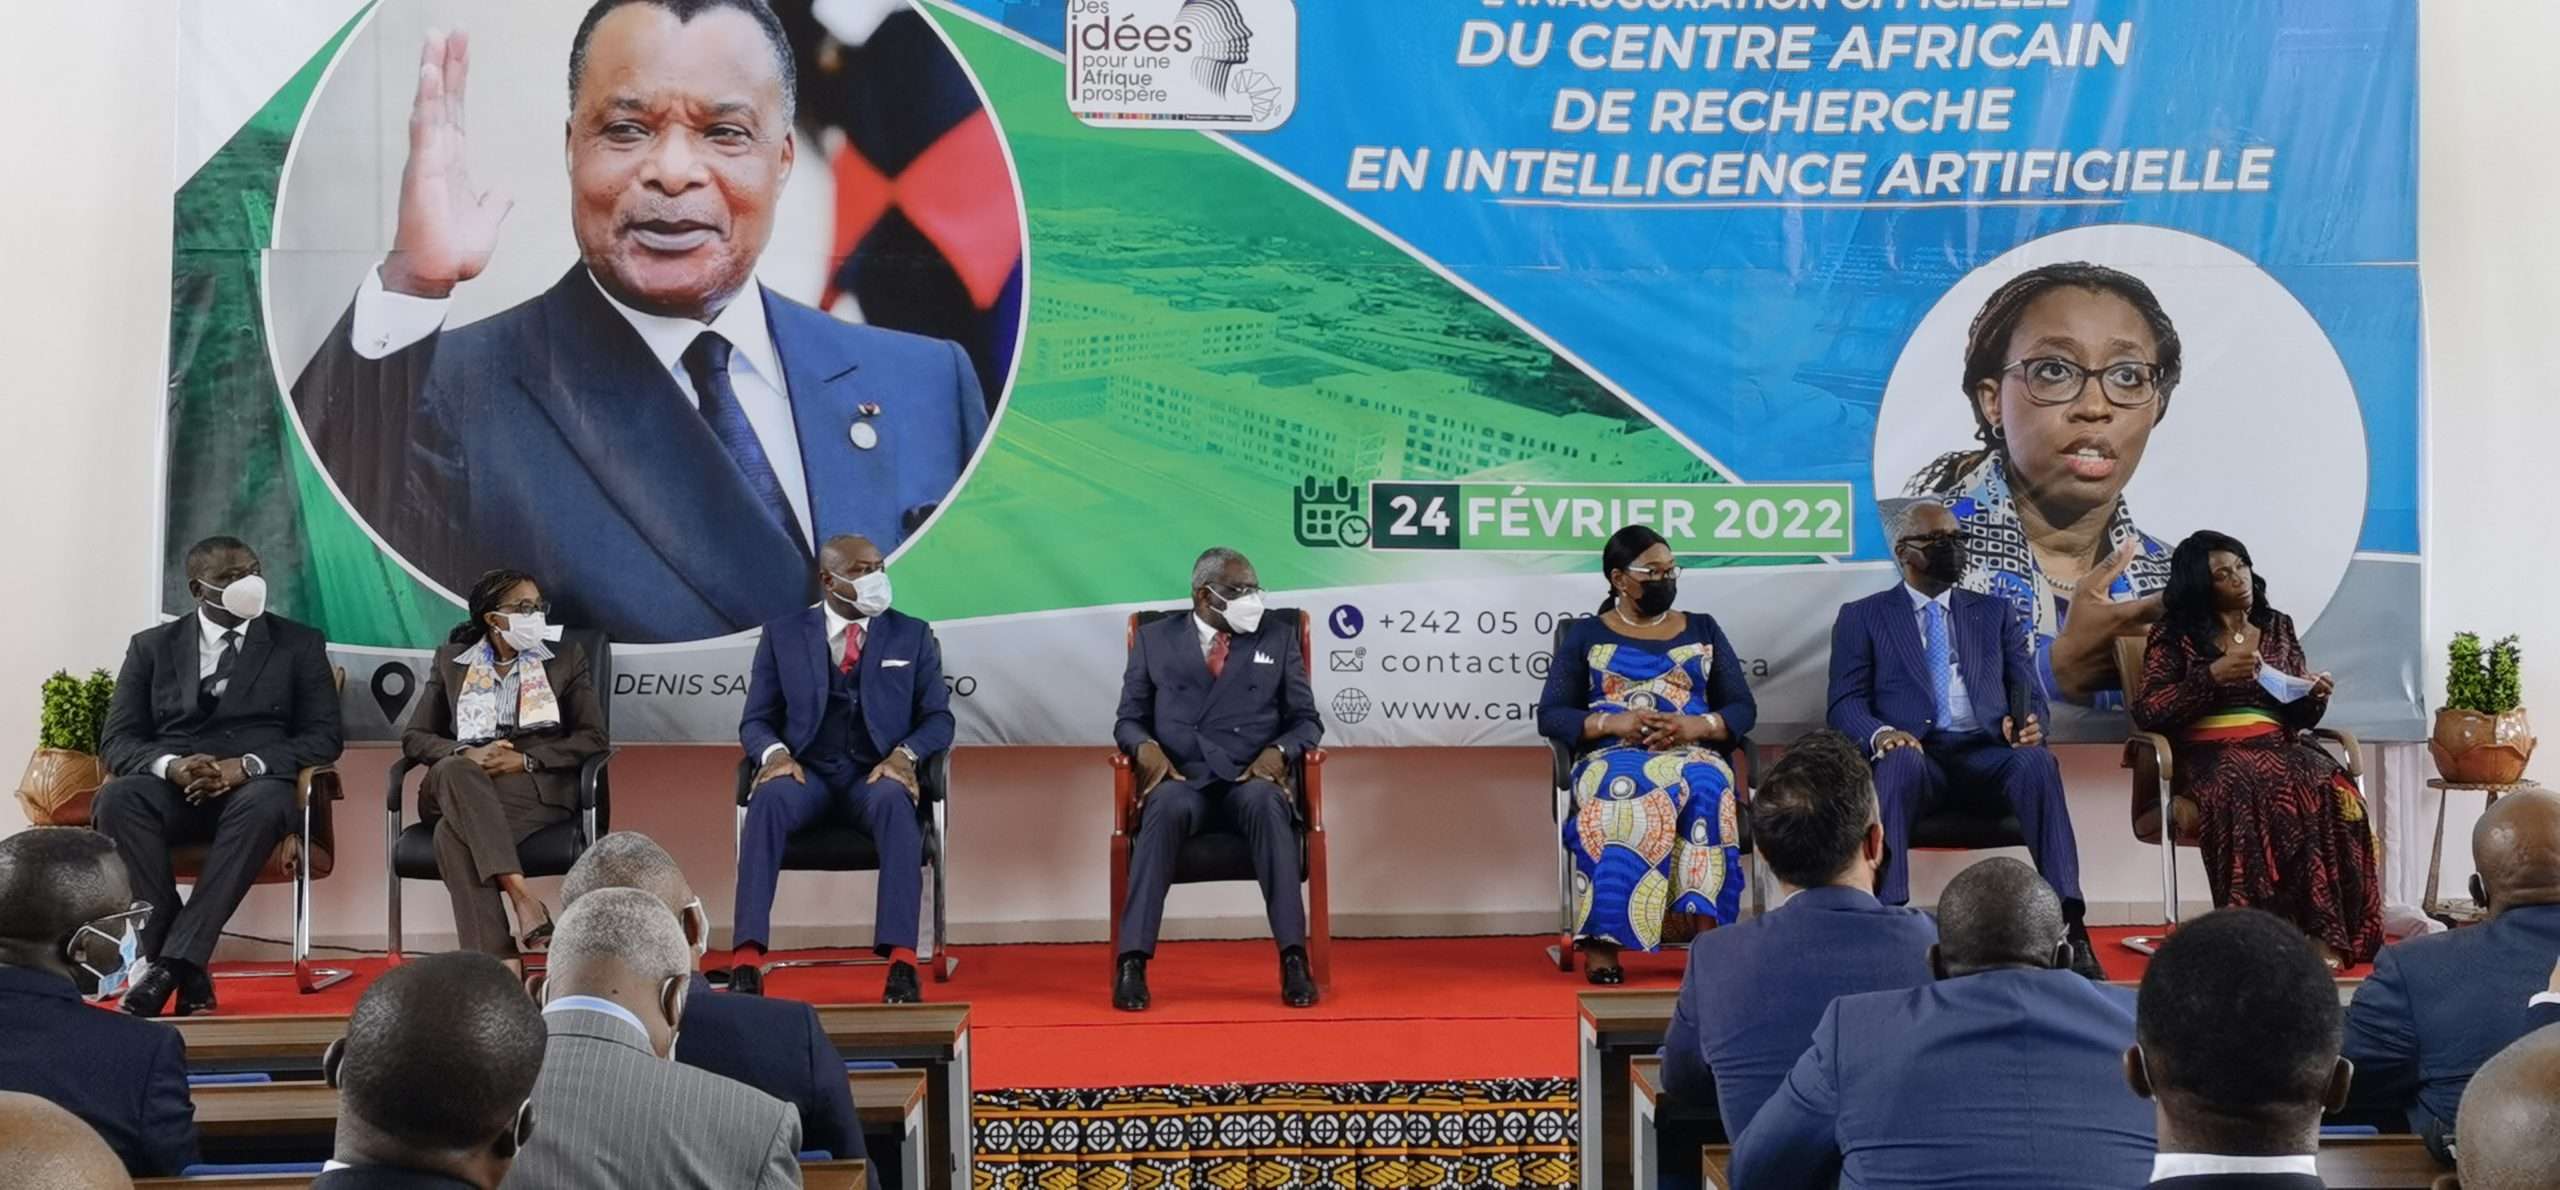 Congo Brazza : le Centre africain de recherche intelligence artificielle (CARIA) officiellement lancé à Kintélé en présence des ministres africains du numérique